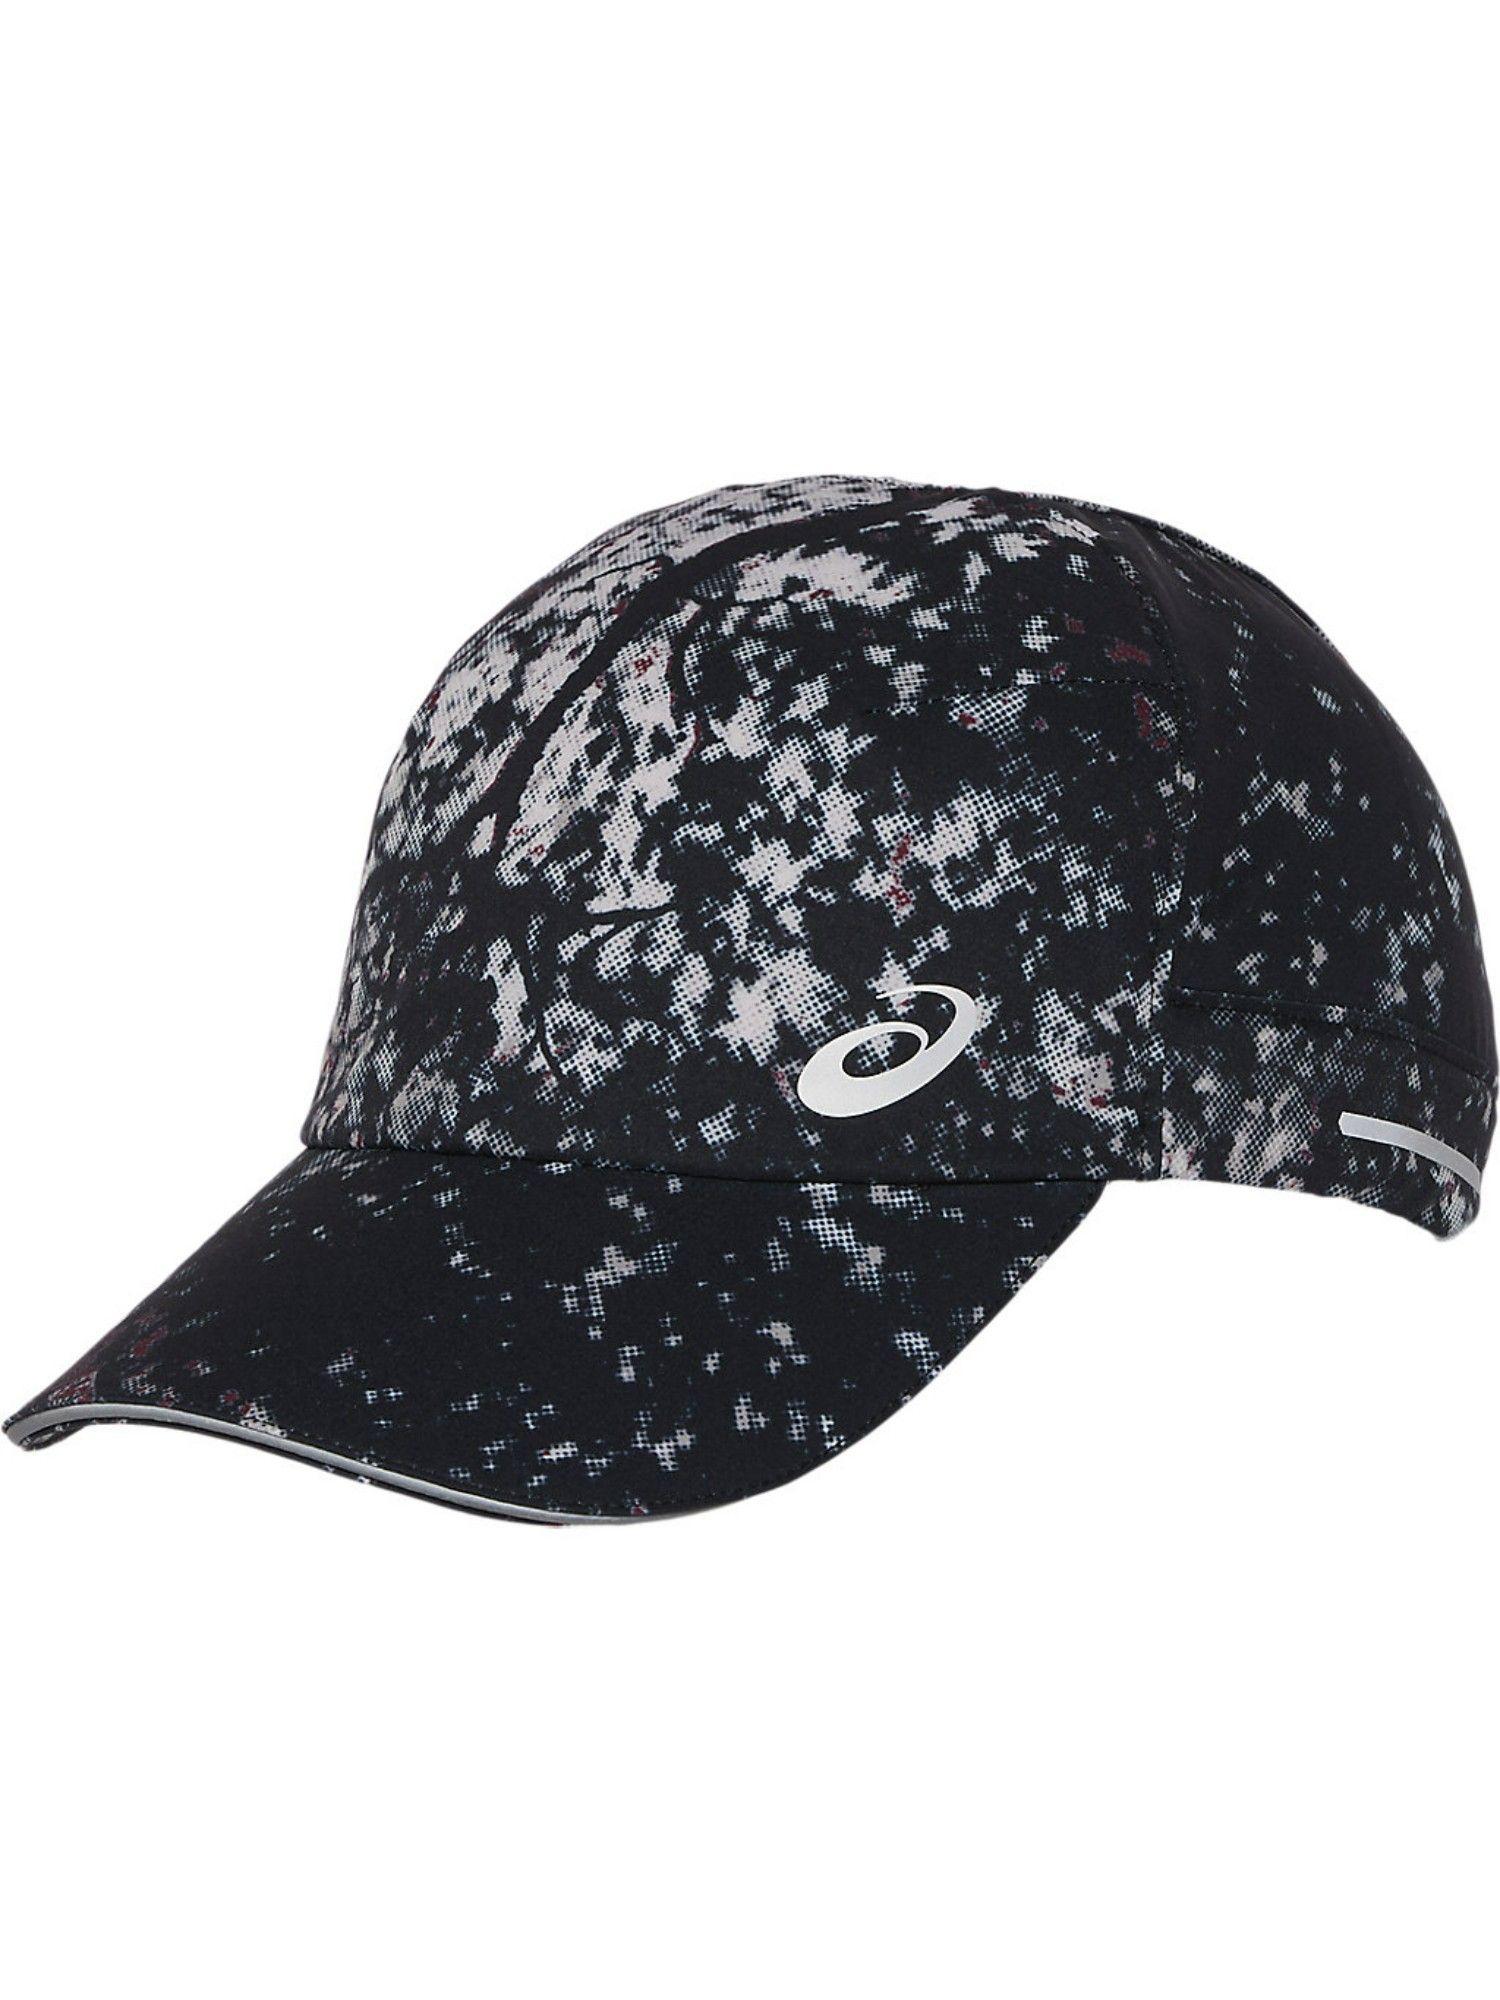 graphic-woven-black-unisex-cap